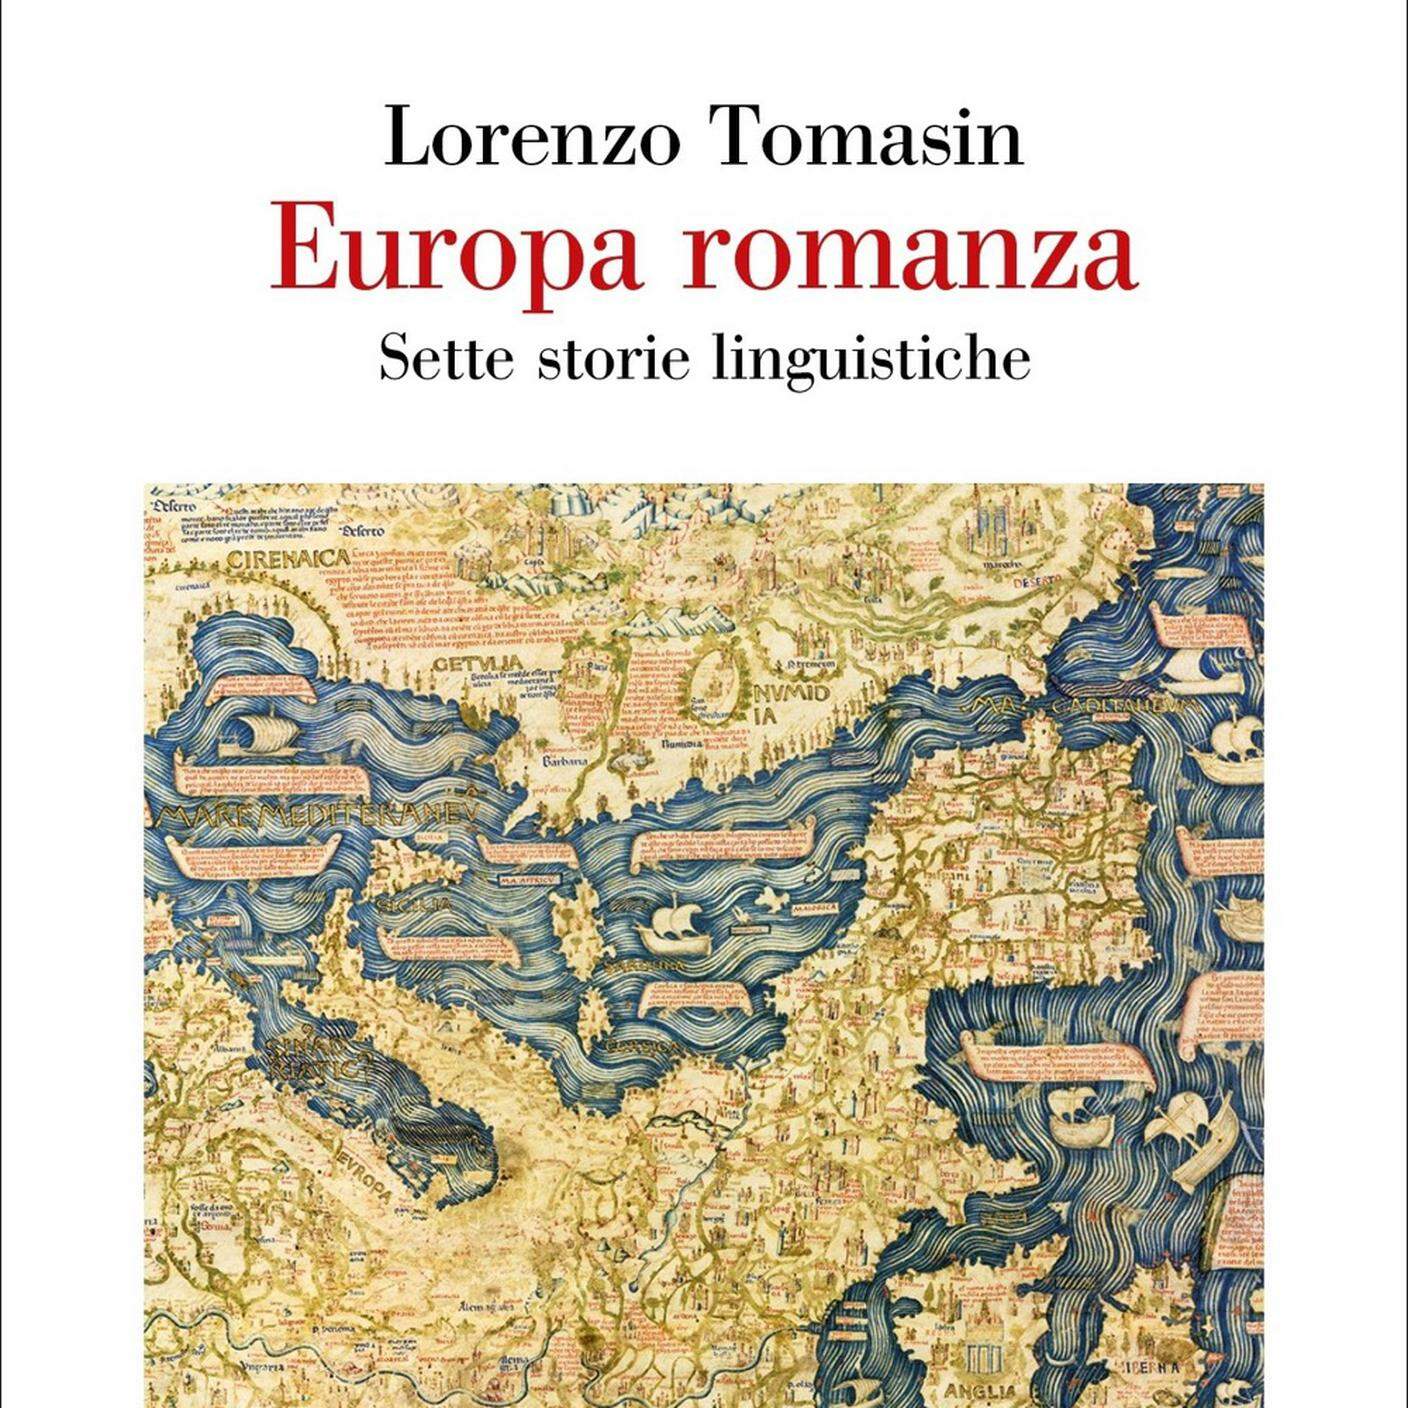 Lorenzo Tomasin: Europa romanza. Sette storie linguistiche, Einaudi